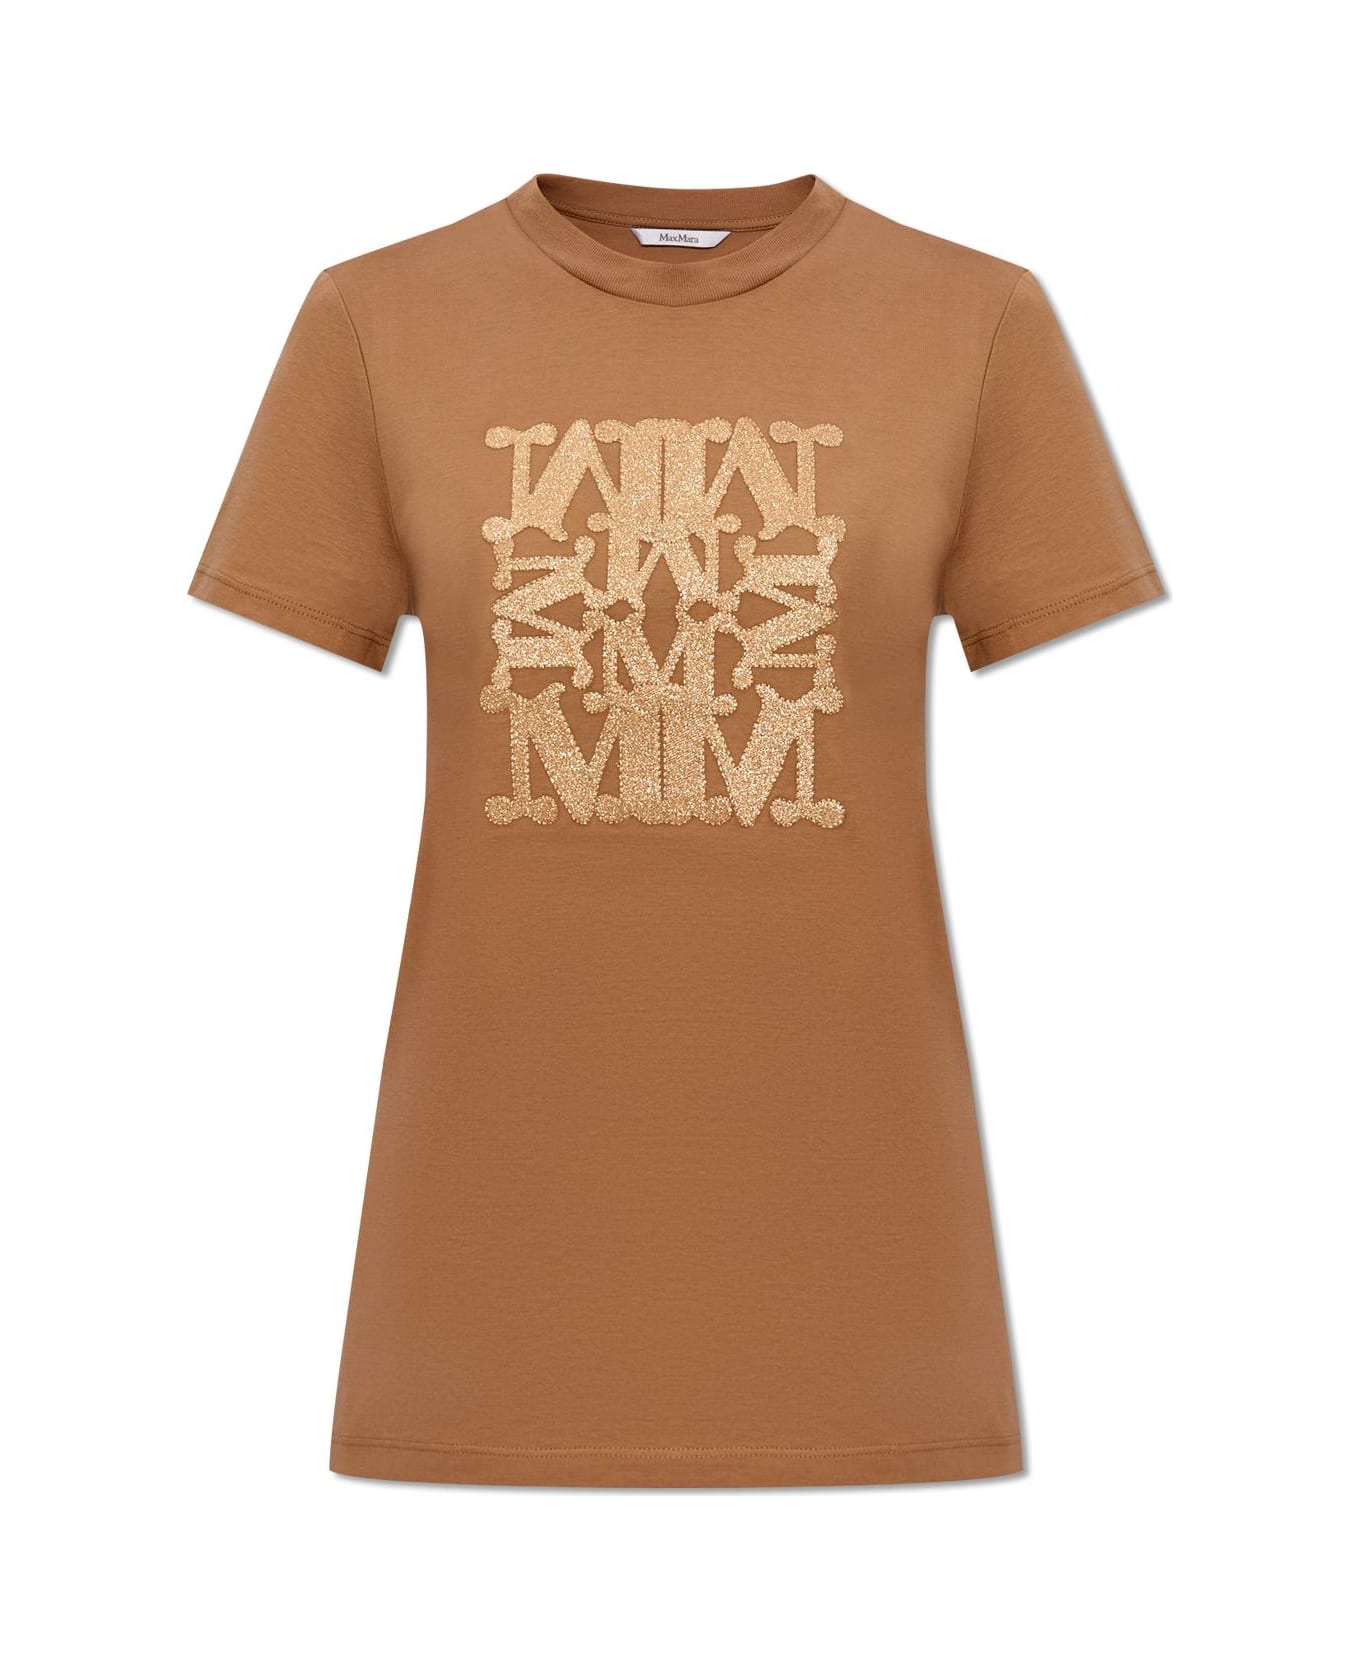 Max Mara 'taverna' T-shirt - BROWN/GOLD